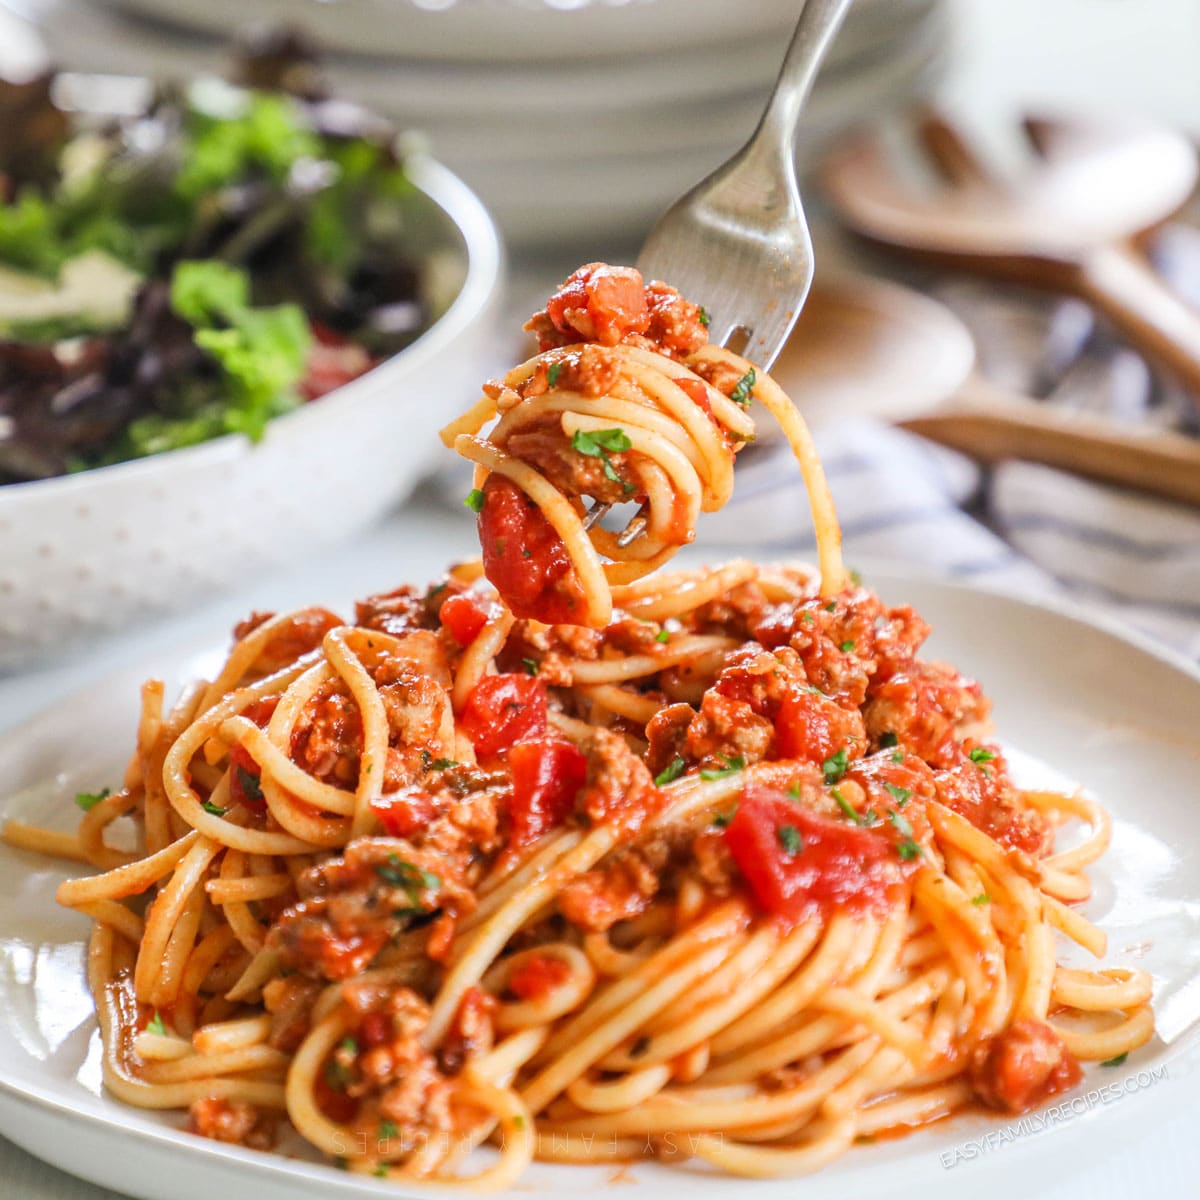 Italian Style Ground Turkey Spaghetti